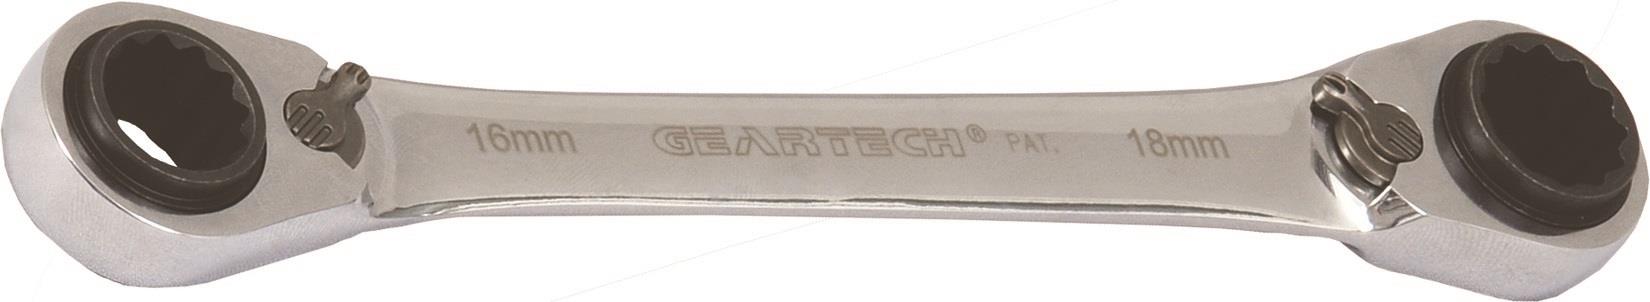 Ratschen-Doppelringschlüssel GearTech 4-in-1 10x13mm - 17x19mm